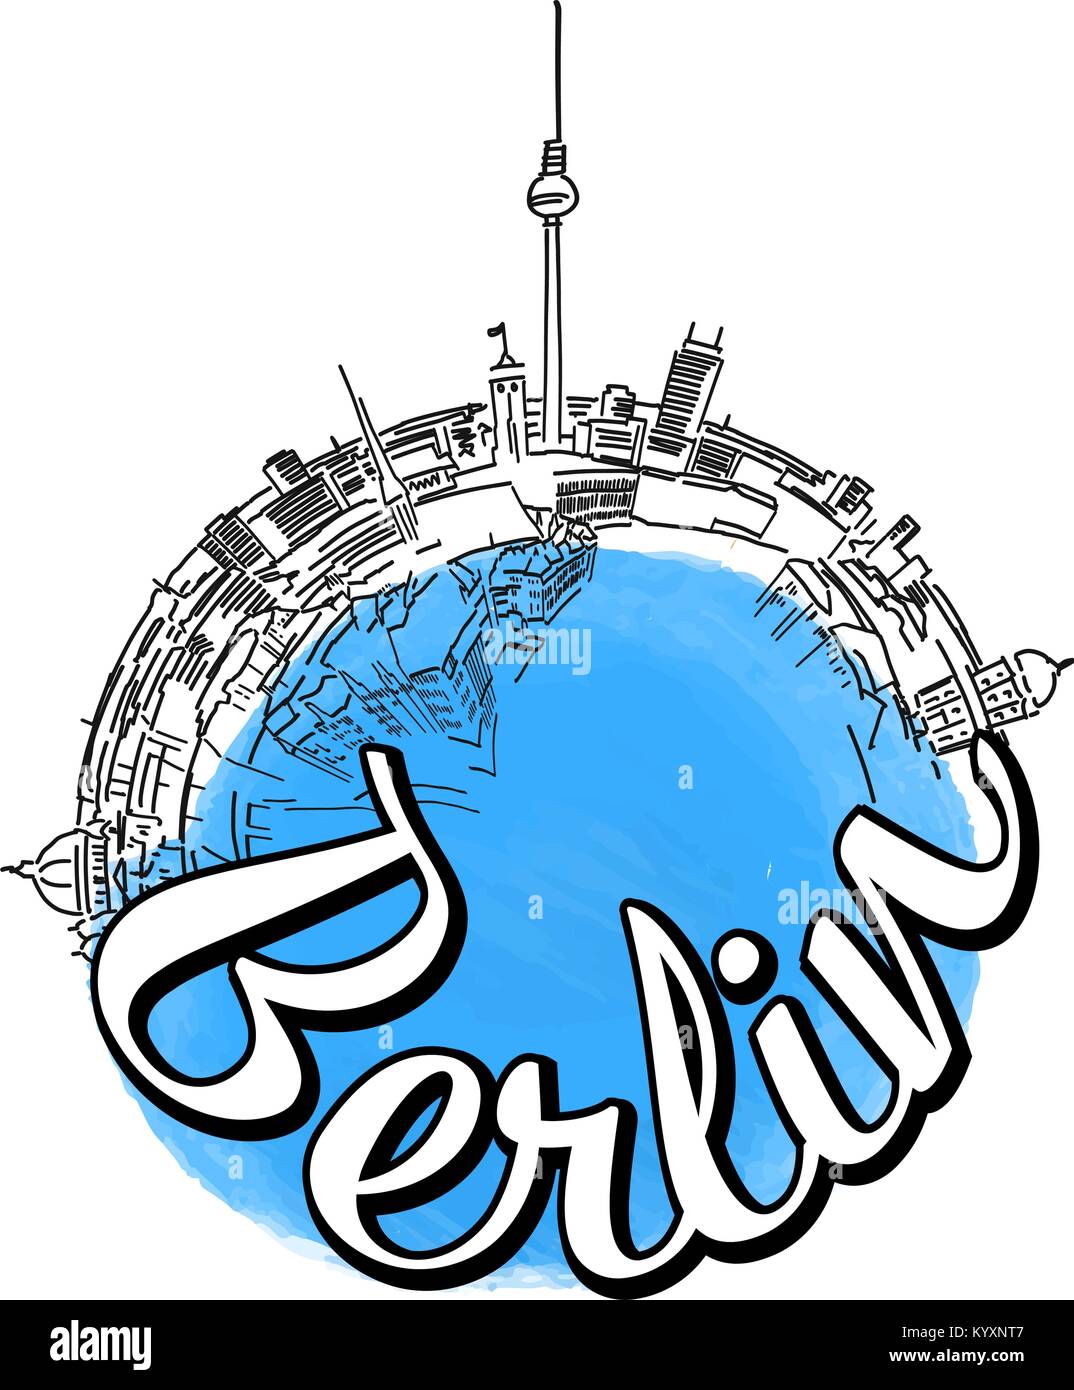 Berlino logo viaggio sketch. Skyline illustrazione vettoriale con acquarello e sullo sfondo di un refuso. Illustrazione Vettoriale